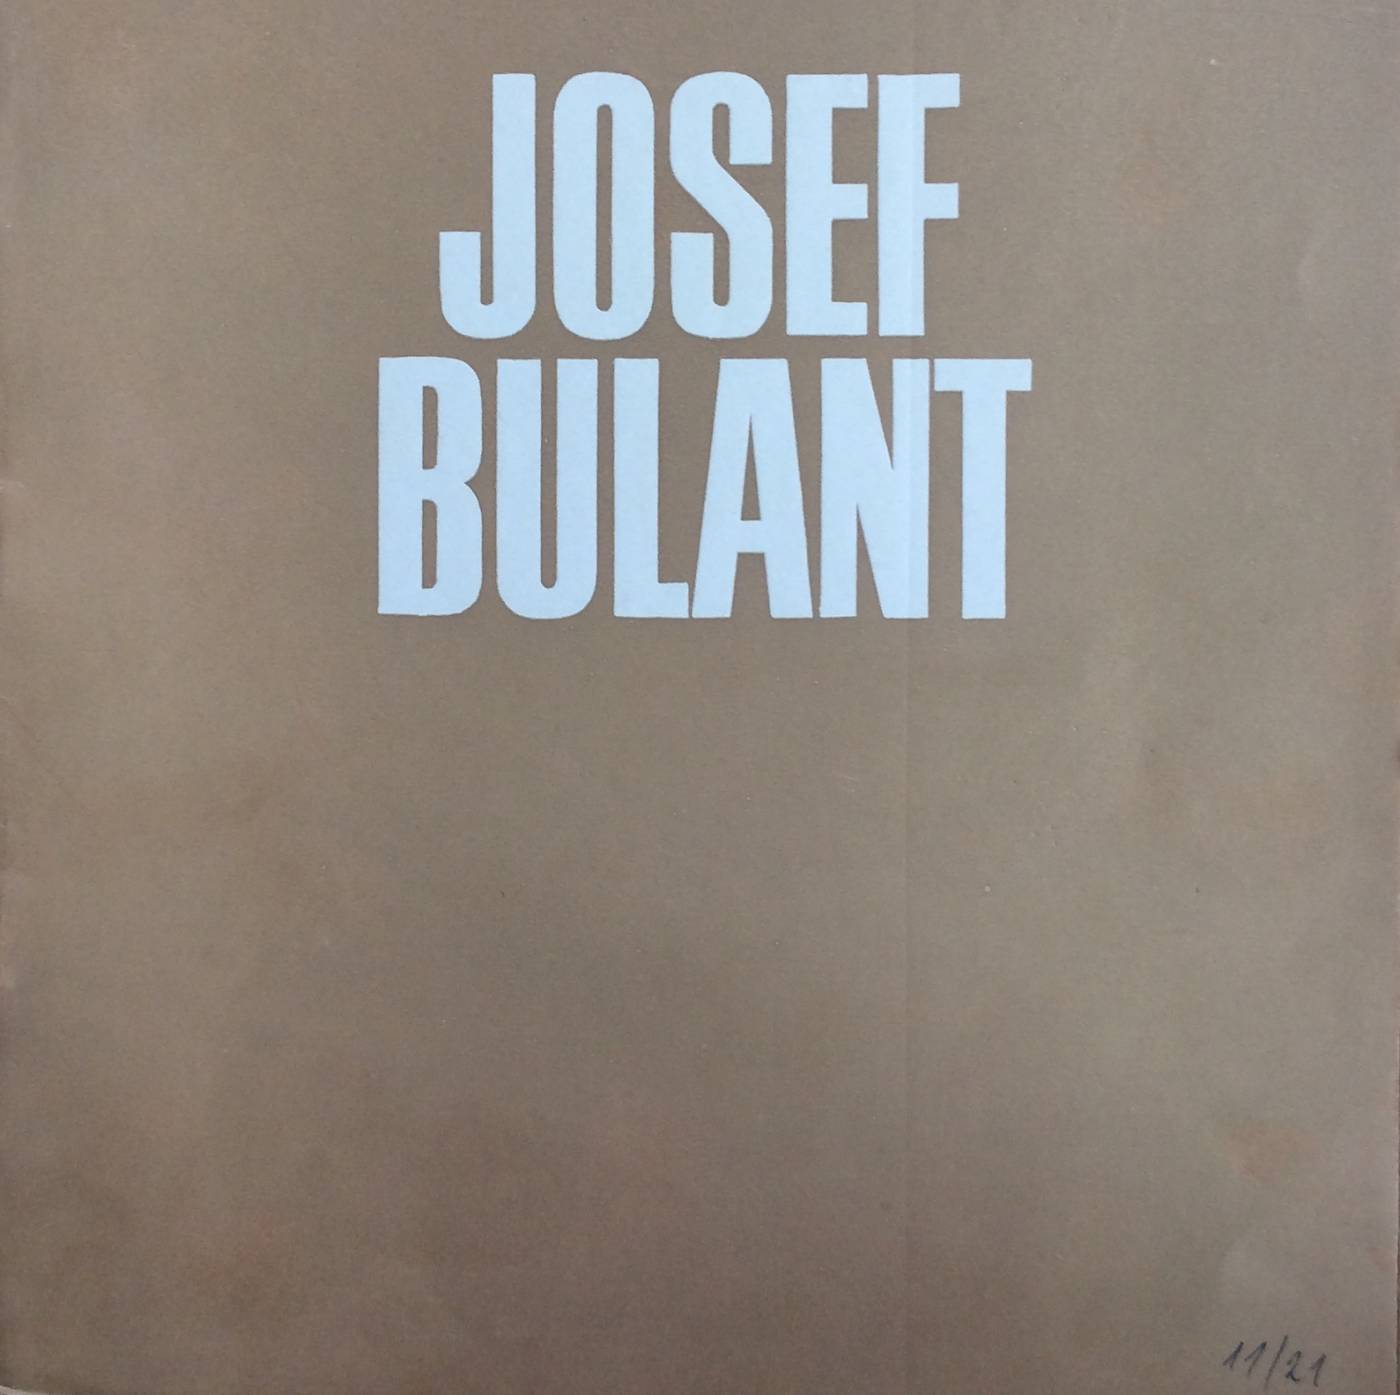 Josef Bulant